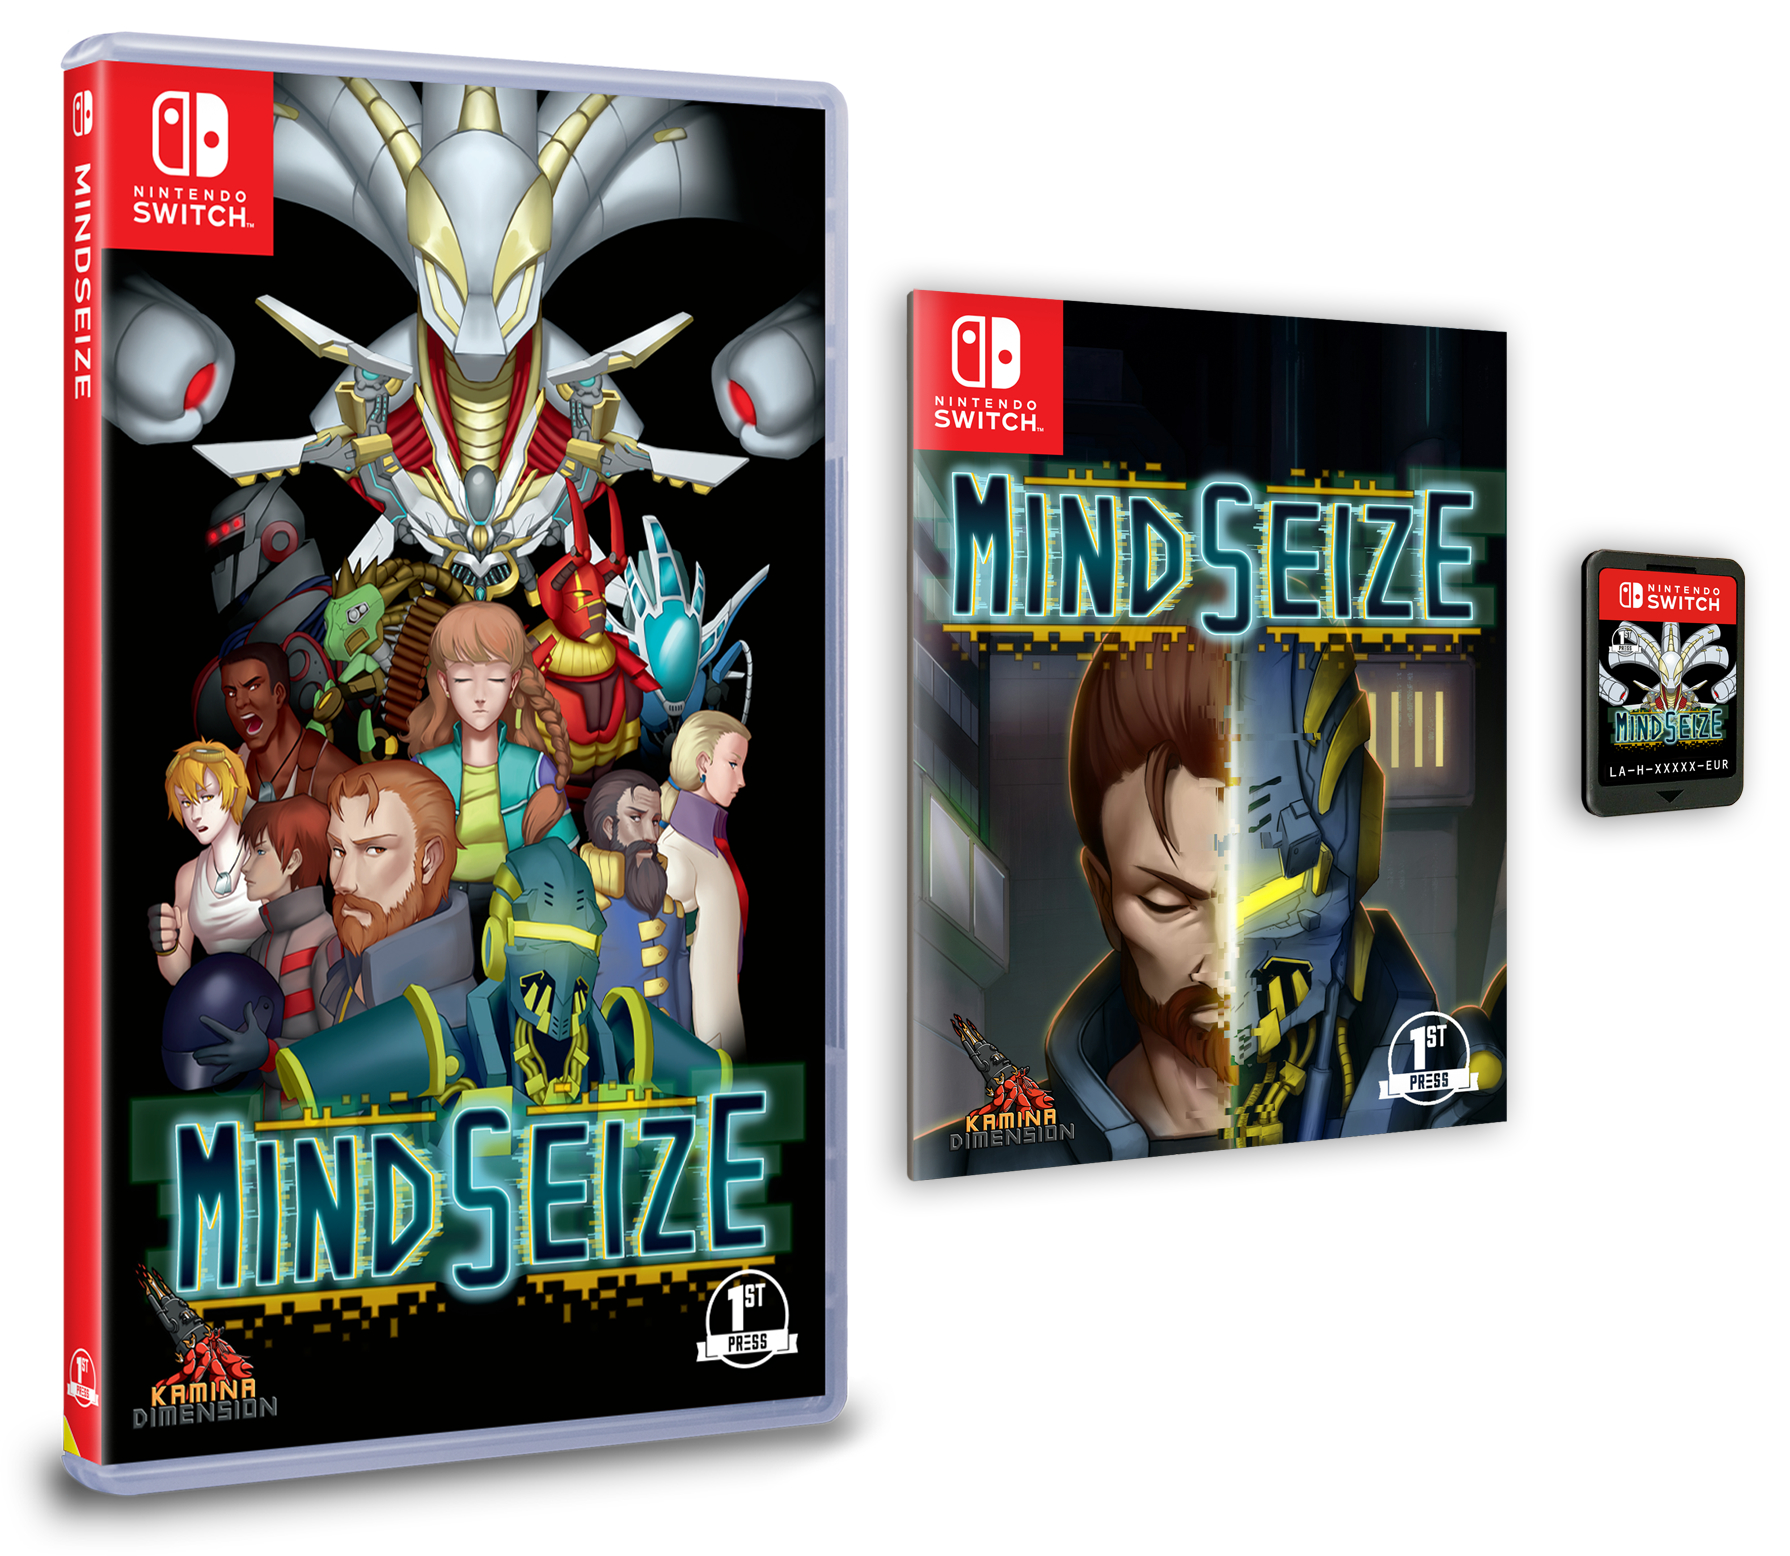 Mindsize マインド シーズ のswitch向けパッケージ版 ダウンロード版が発売決定 Nintendo Switch 情報ブログ 非公式